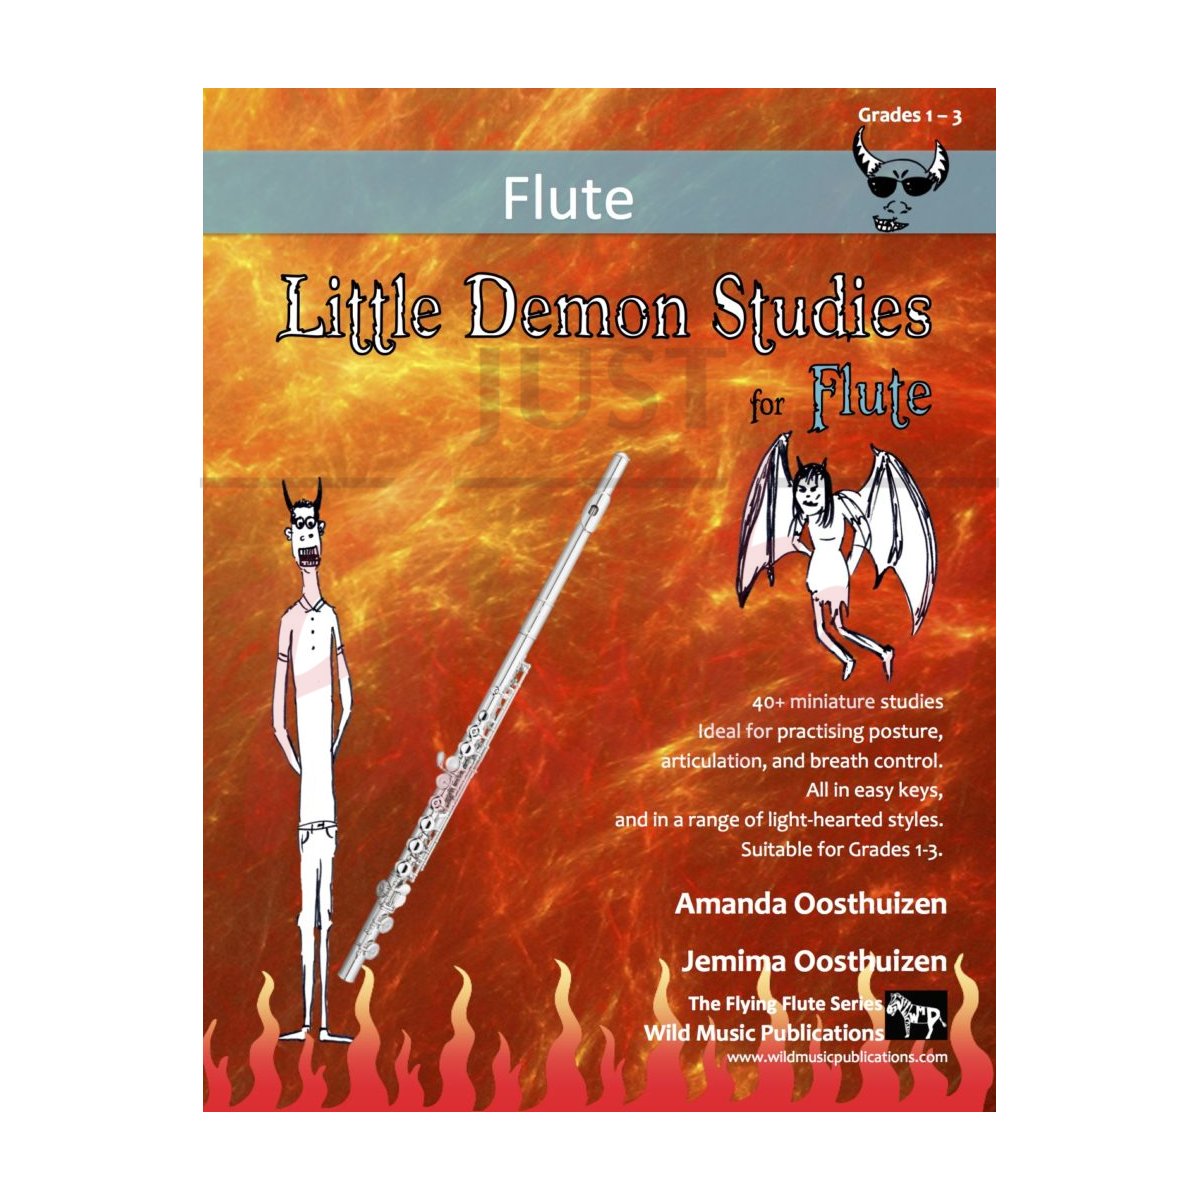 Little Demon Studies for Flute